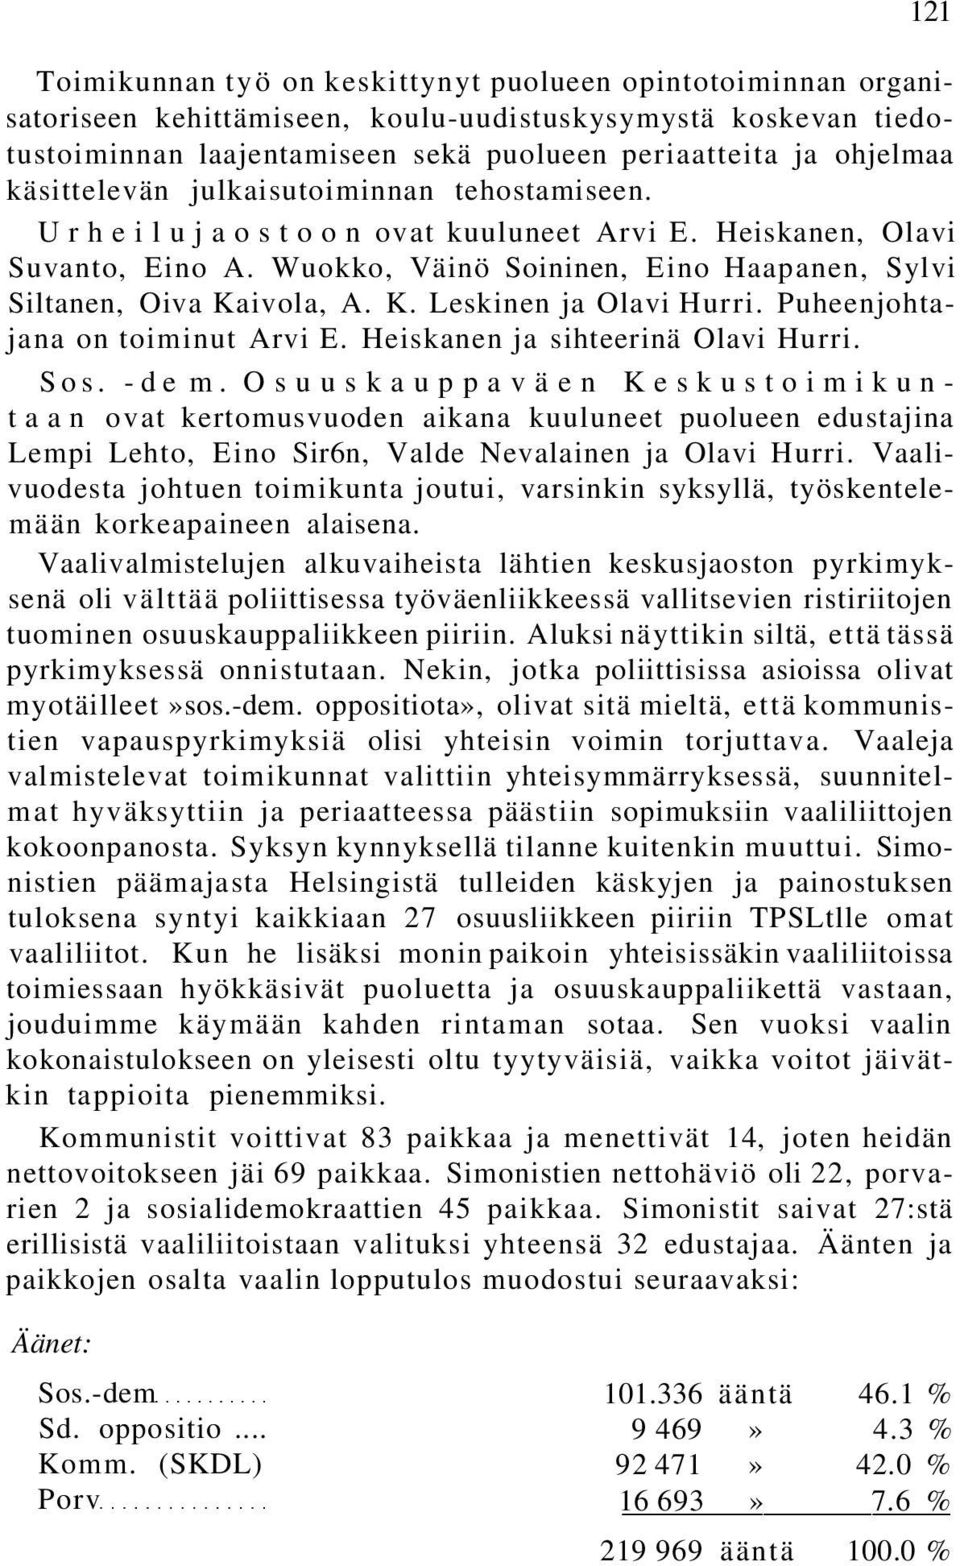 ivola, A. K. Leskinen ja Olavi Hurri. Puheenjohtajana on toiminut Arvi E. Heiskanen ja sihteerinä Olavi Hurri. Sos. -de m.